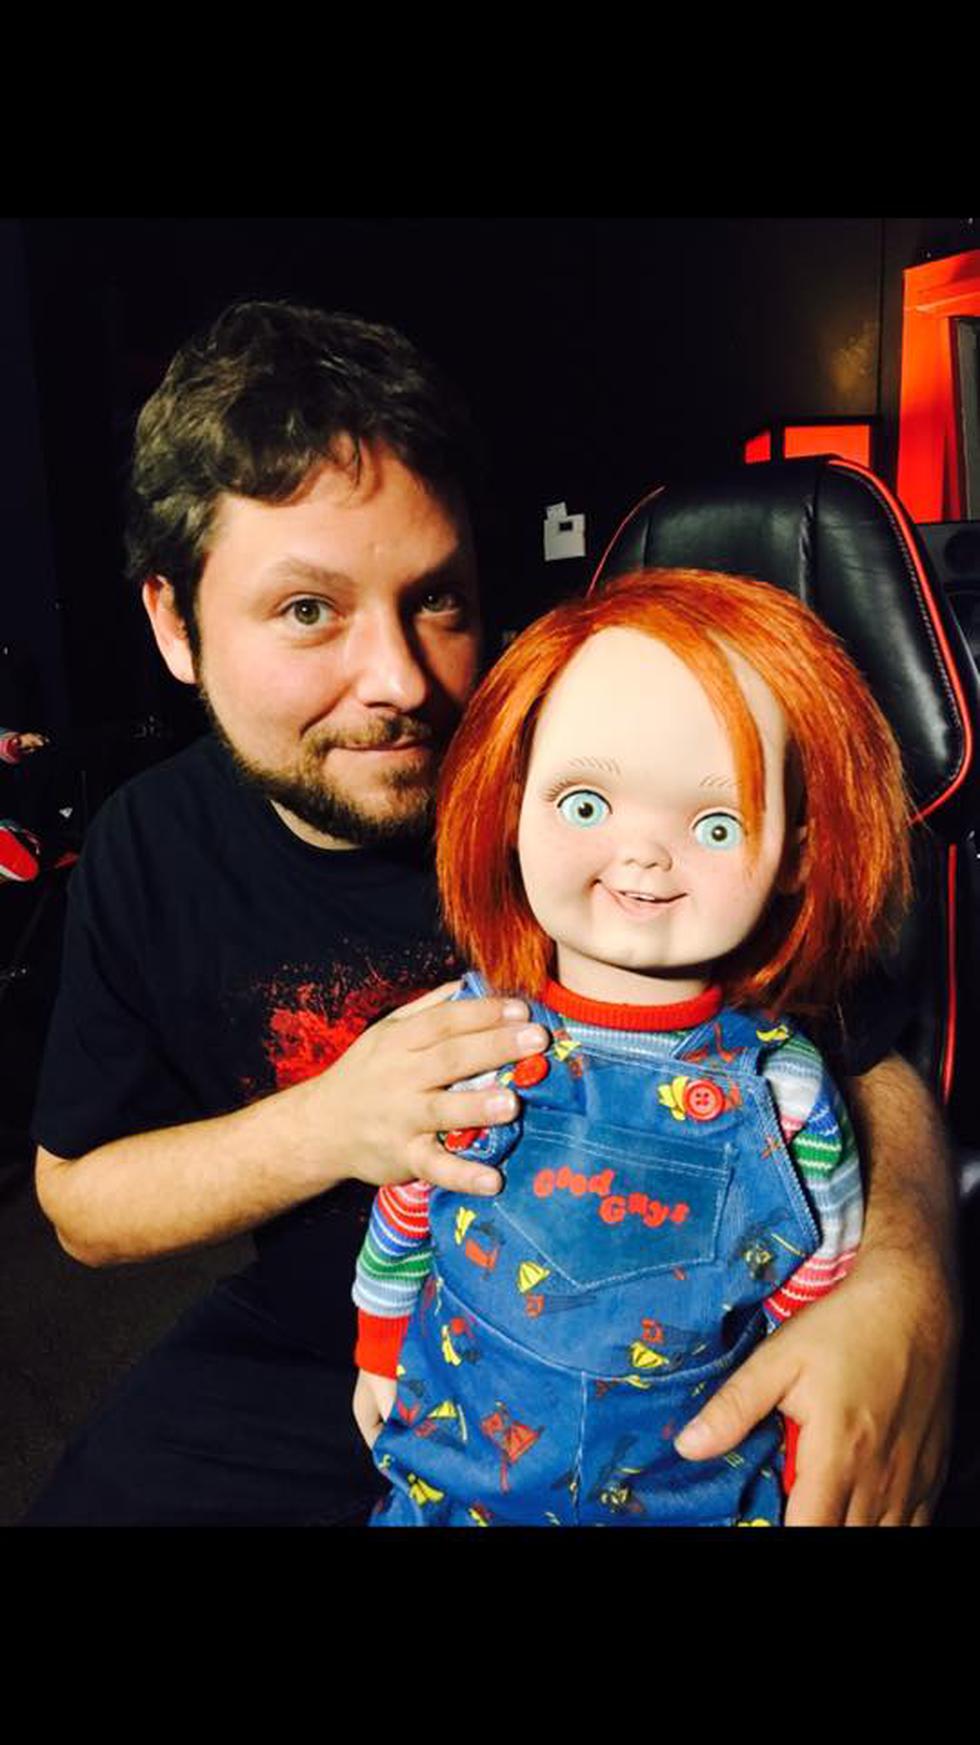 Facebook: Así luce 'Andy' de la clásica película de terror 'Chucky' [FOTOS]  | REDES-SOCIALES | PERU21